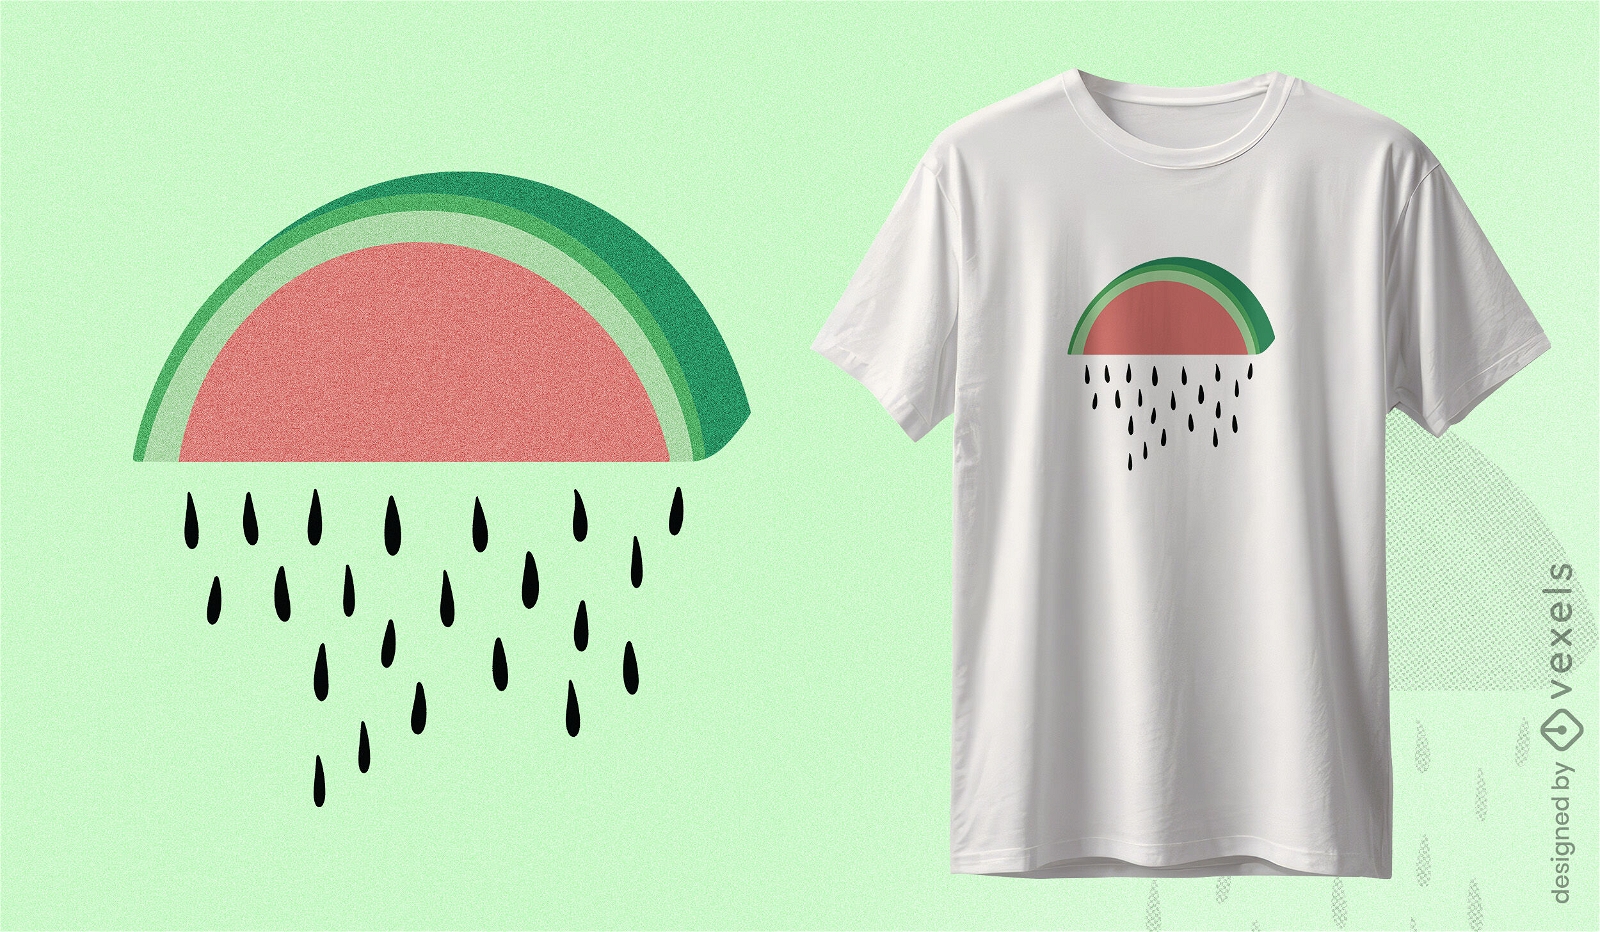 Wassermelonen-Regenwolken-T-Shirt-Design